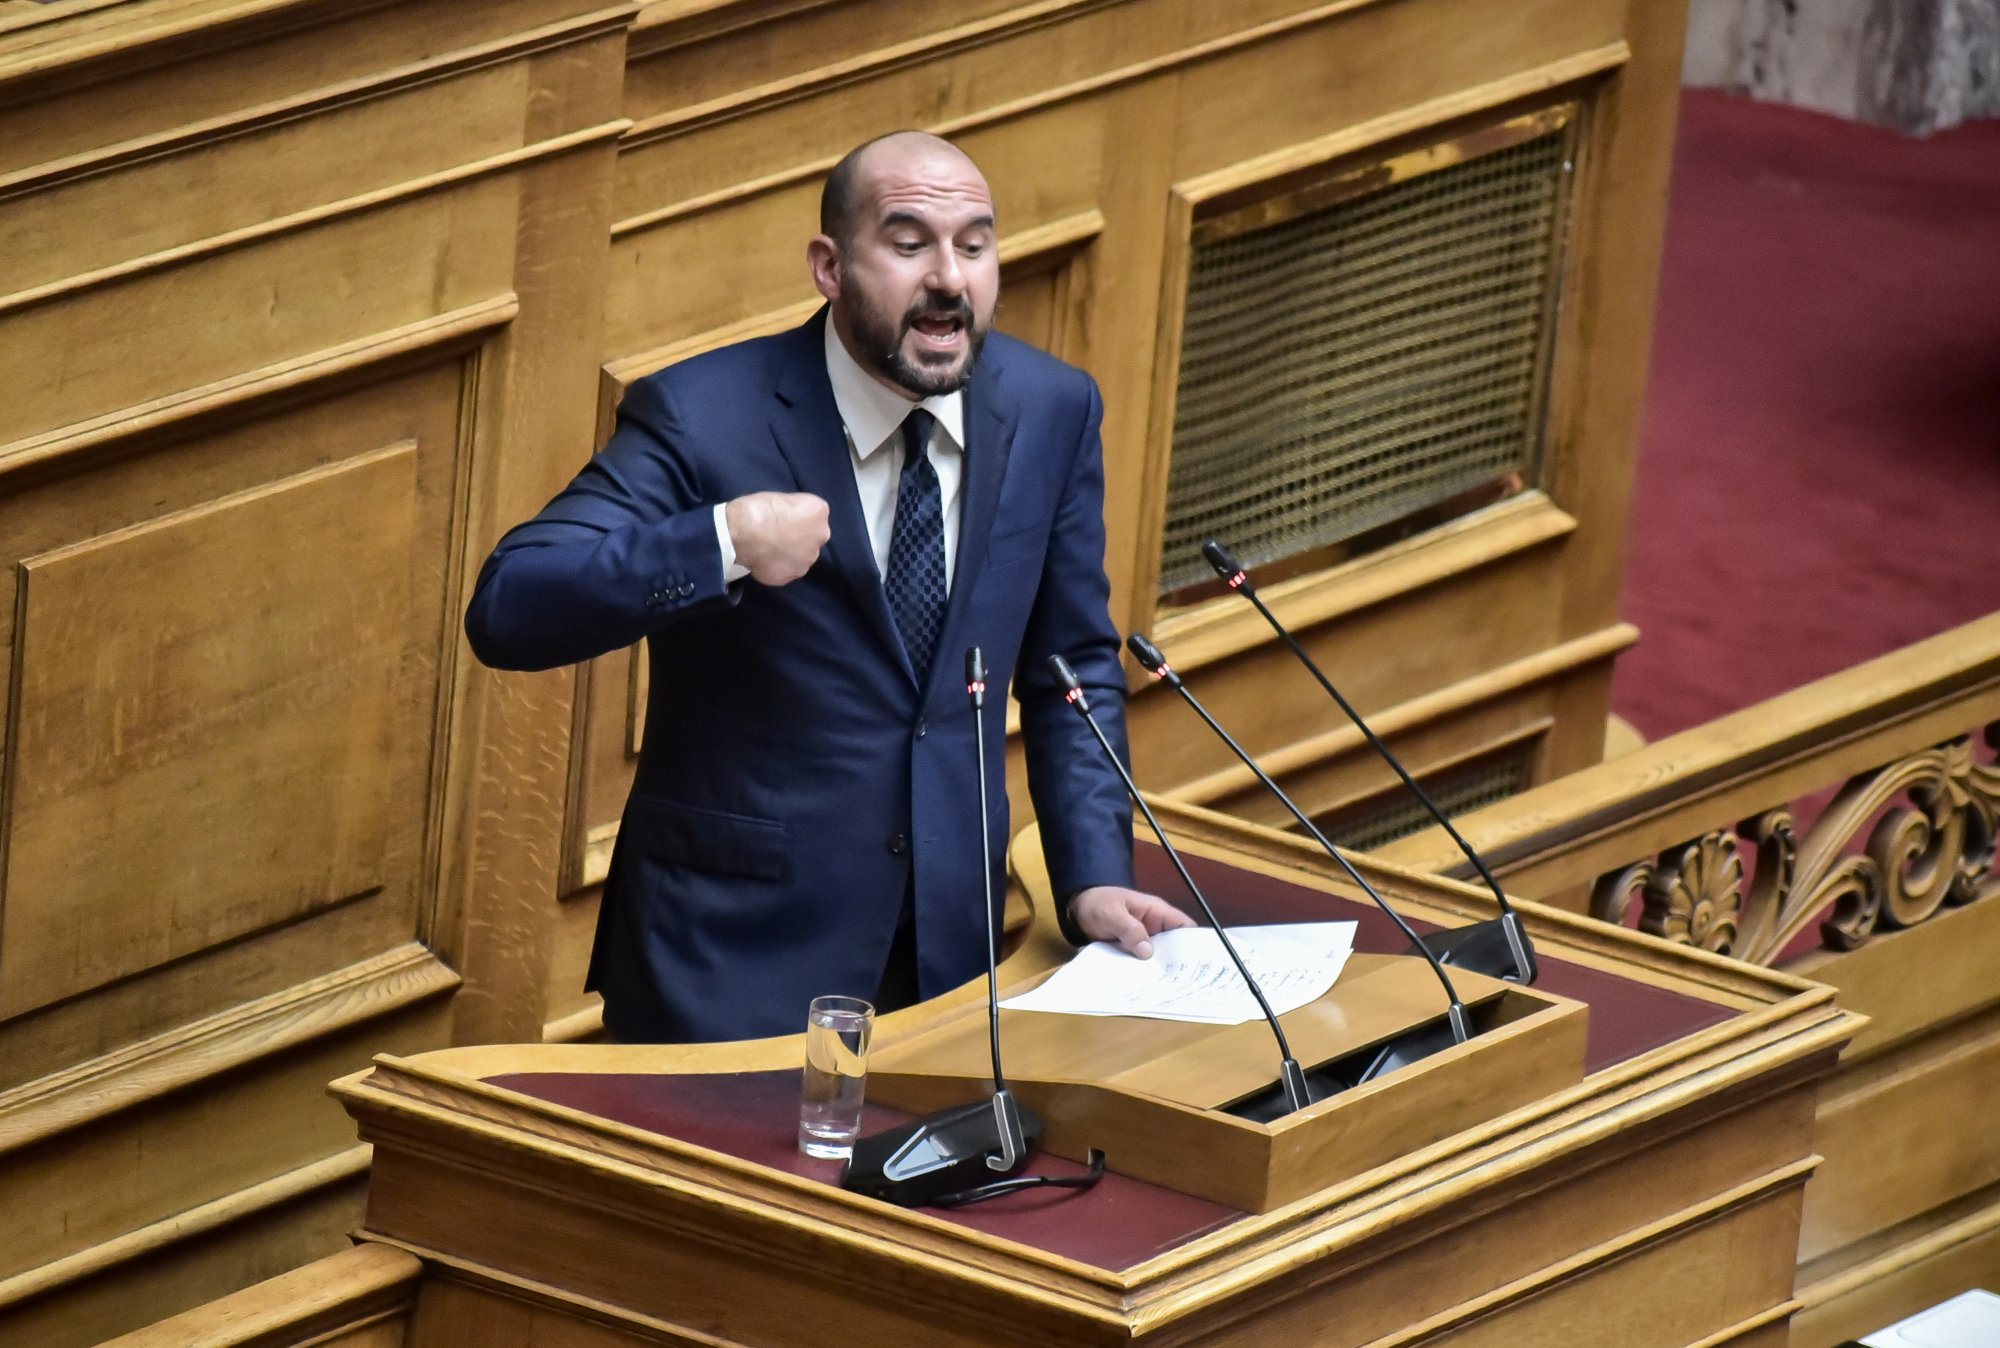 Ο ΣΥΡΙΖΑ είναι πολιτικά απροσδιόριστος, δεν βλέπουμε συνεργασία, λέει ο Τζανακόπουλος